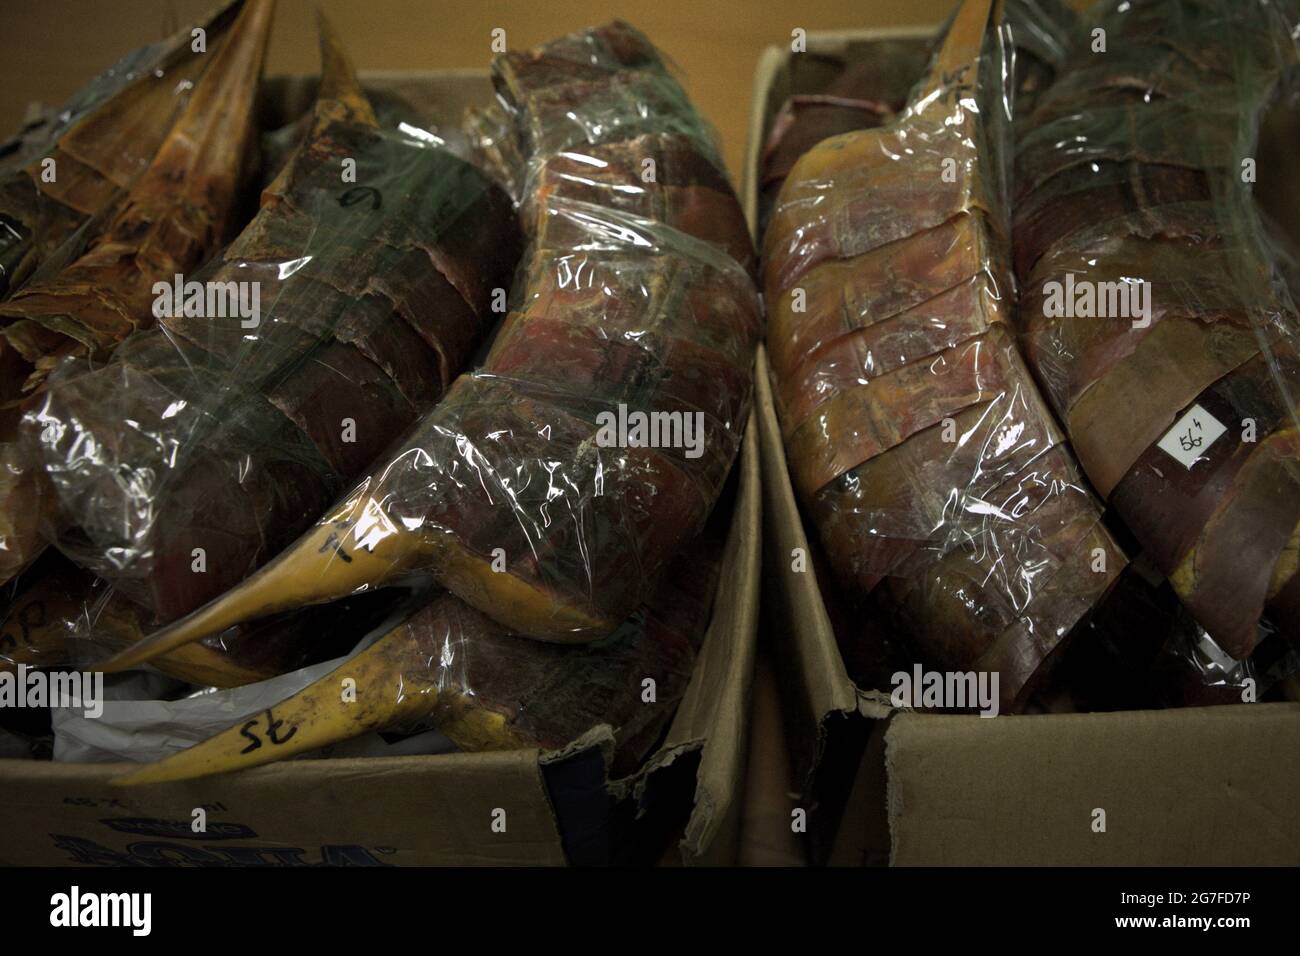 Jakarta, Indonesien. Juli 2013. Schnäbel von Hornbills, die vom internationalen Flughafen Soekarno-Hatta in Jakarta nach China geschmuggelt wurden. Fotografiert im Büro der indonesischen Naturschutzbehörde (BKSDA) in Jakarta. Stockfoto